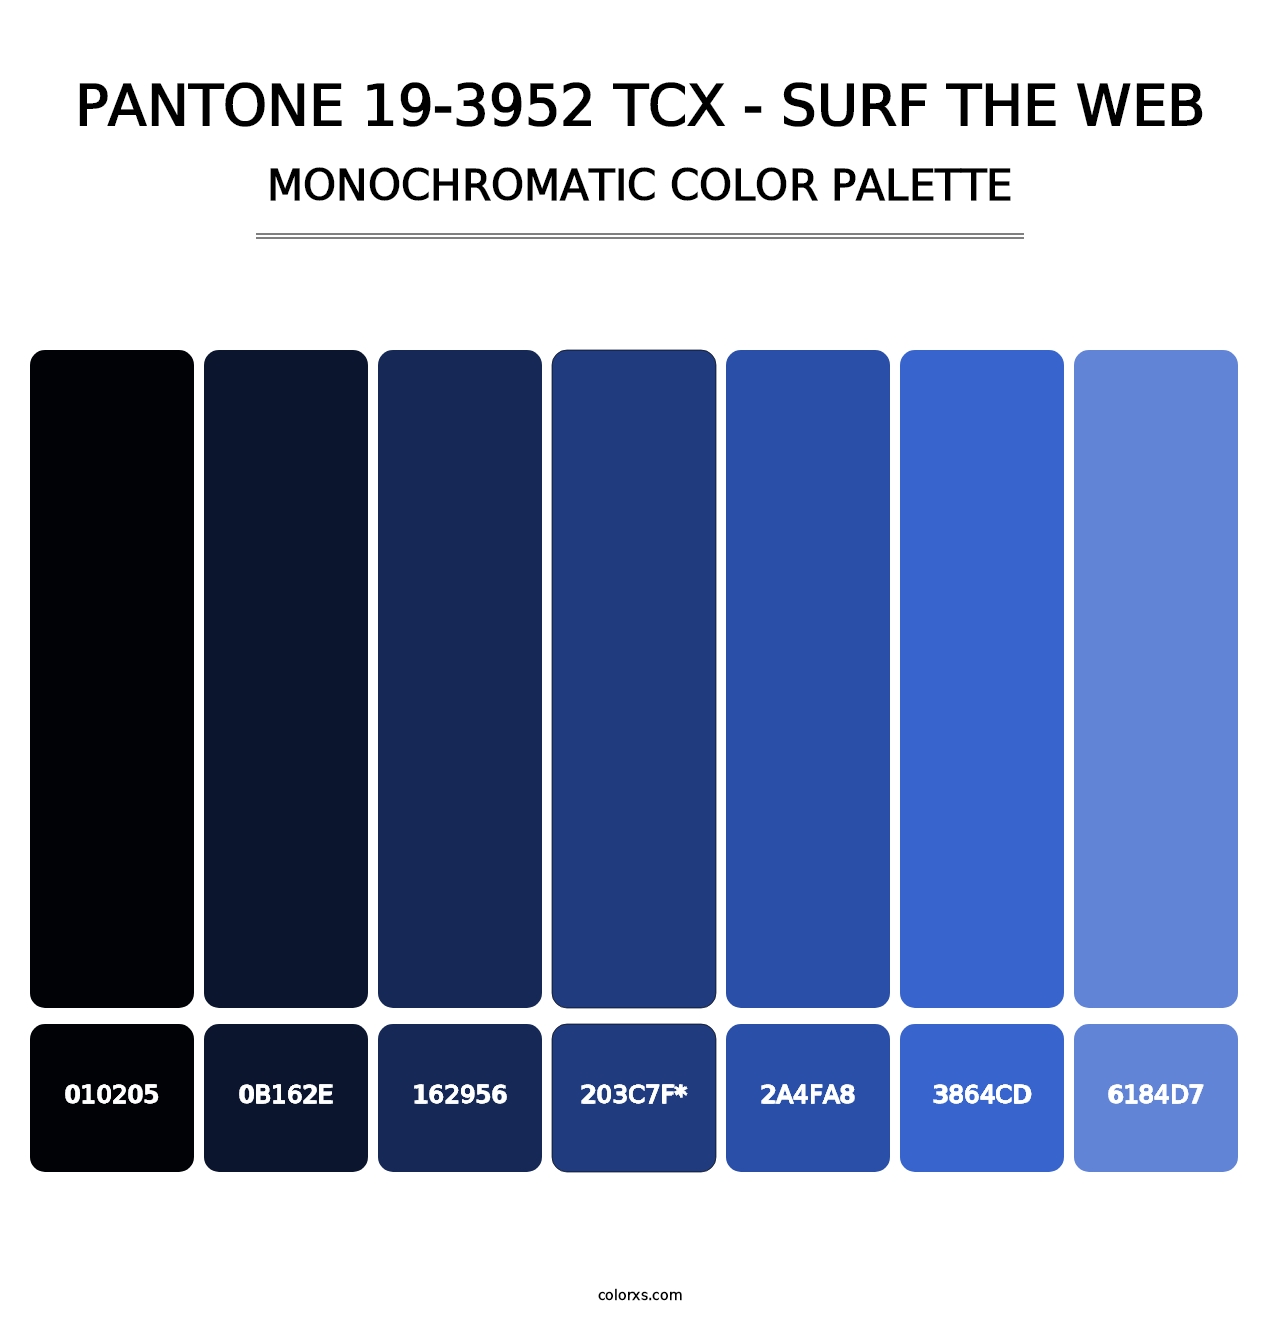 PANTONE 19-3952 TCX - Surf the Web - Monochromatic Color Palette